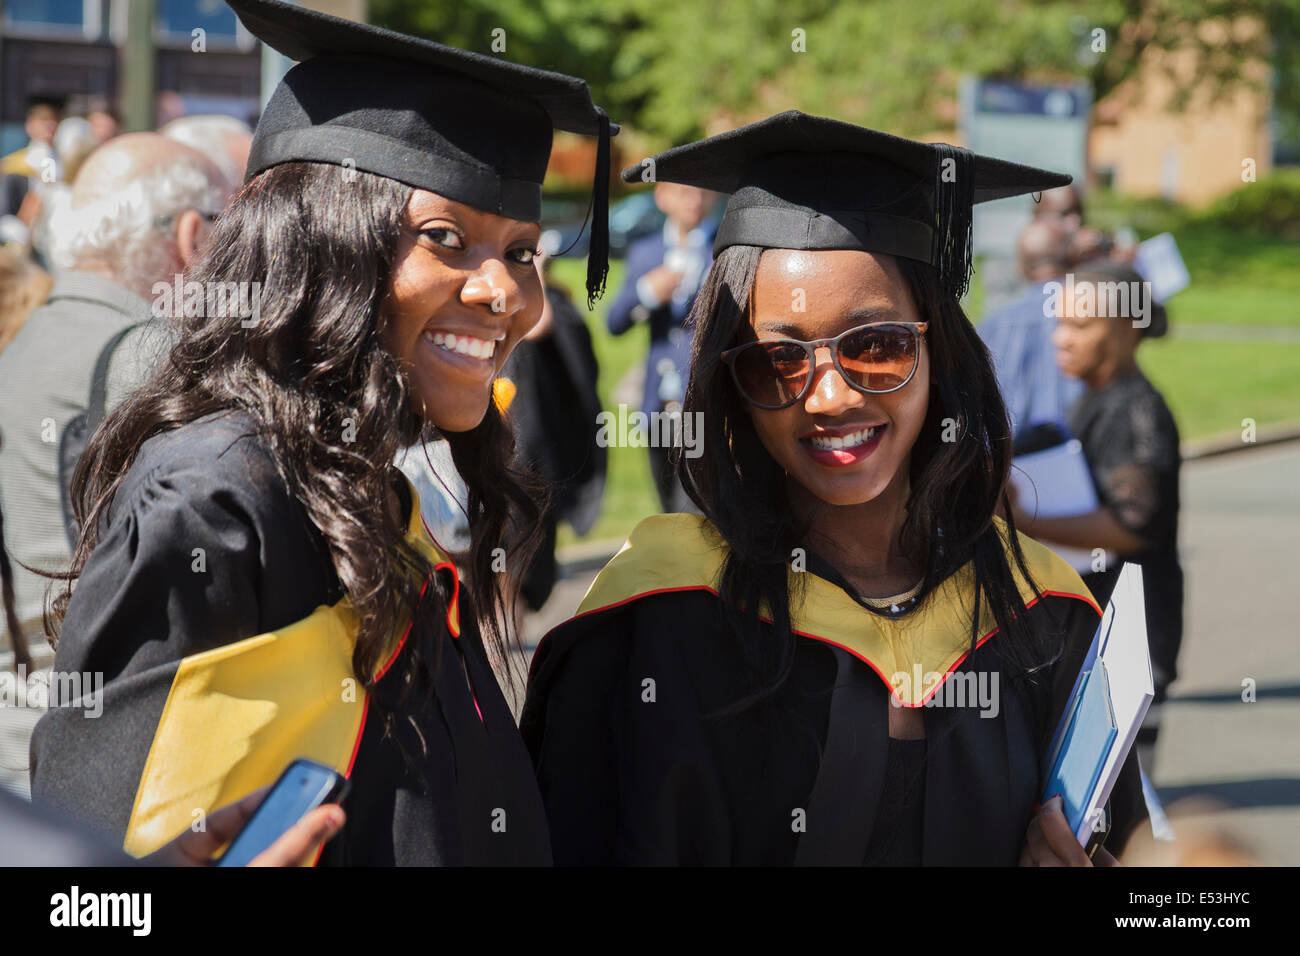 Two female students  at University graduation day, Keele University, UK Stock Photo